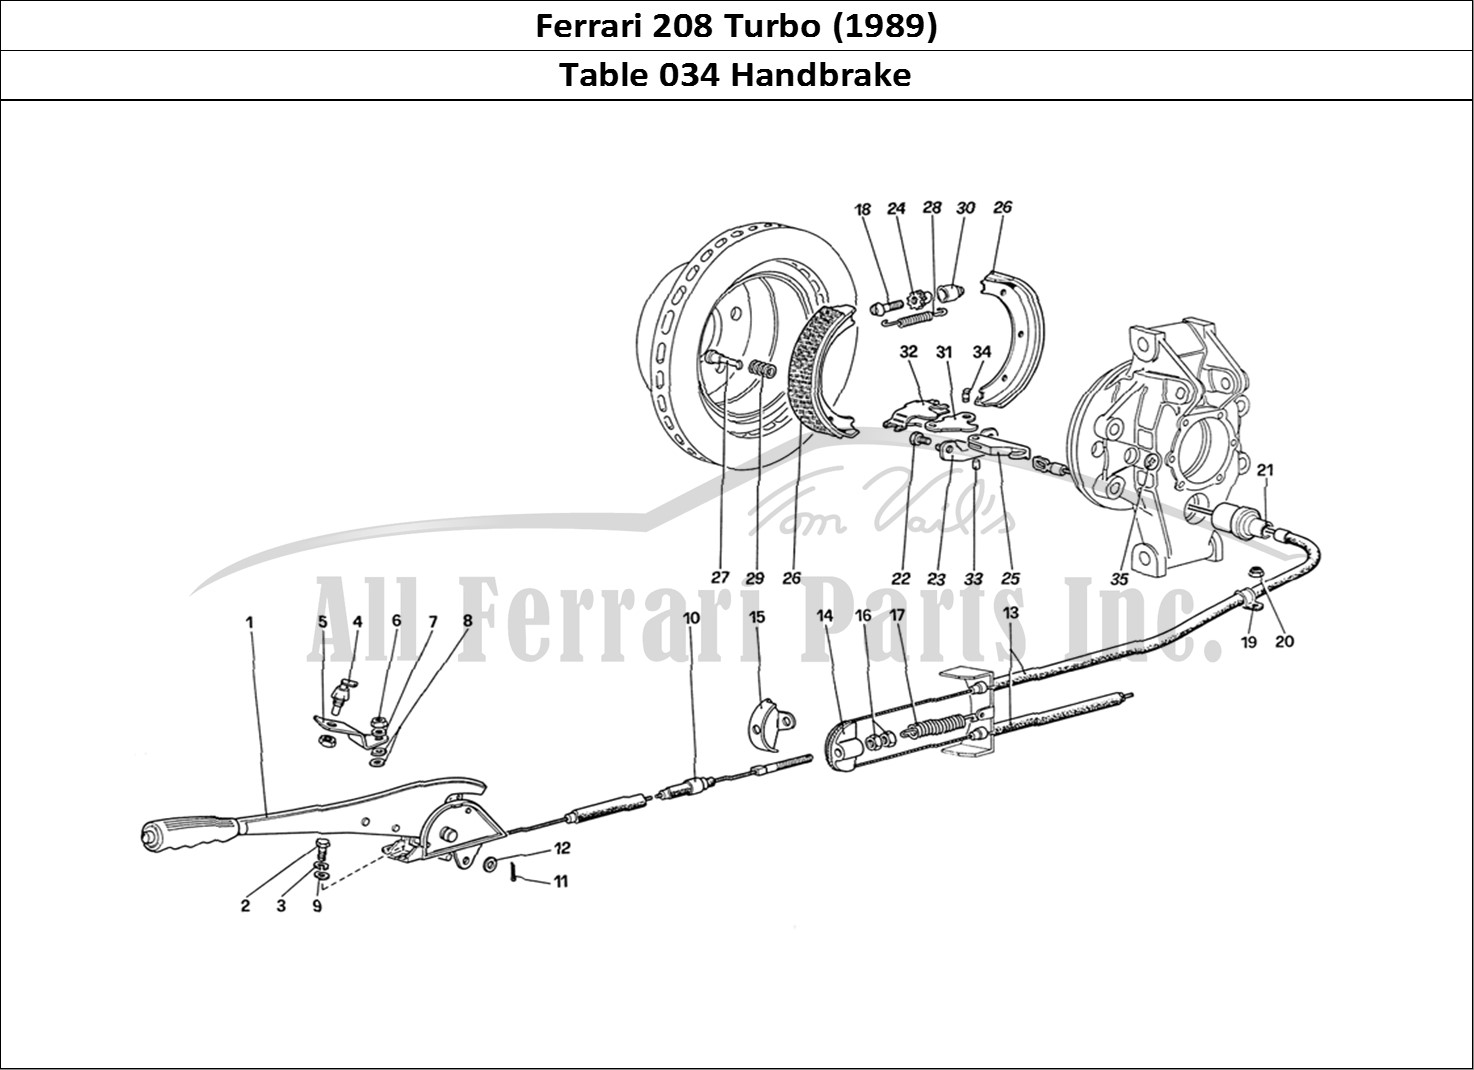 Ferrari Parts Ferrari 208 Turbo (1989) Page 034 Hand - Brake Control